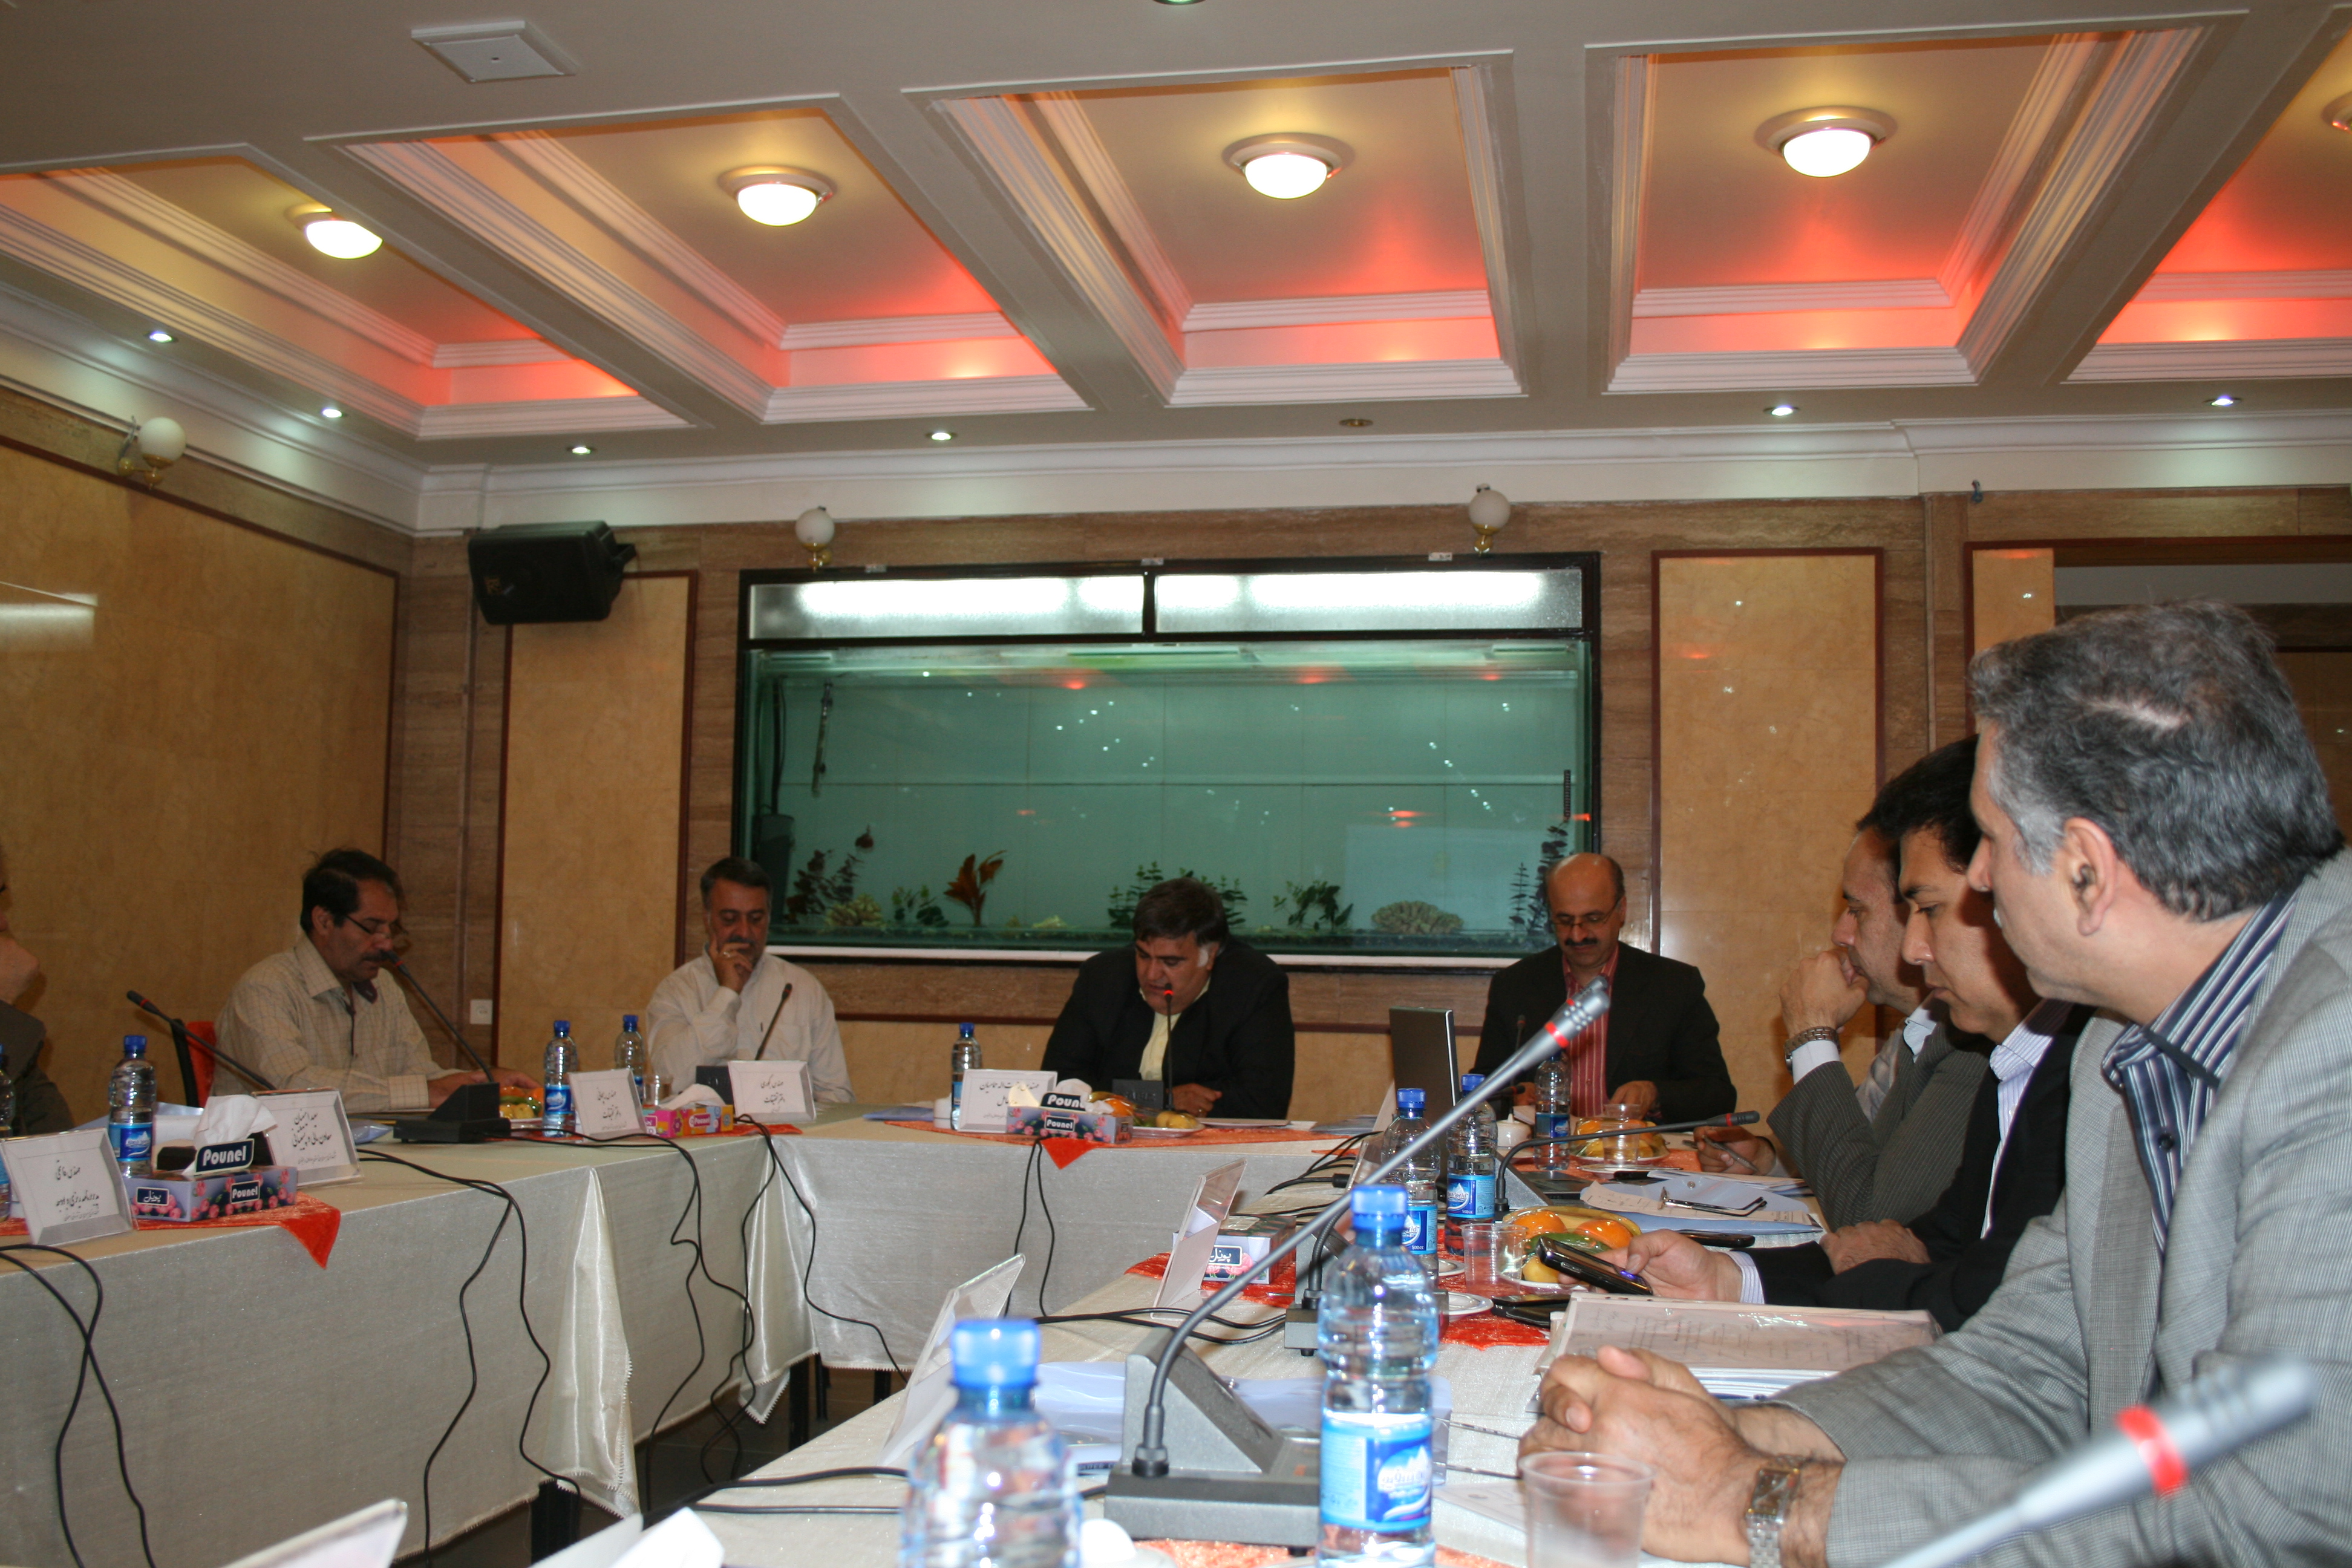 دومین گردهمایی کمیته تحقیقات منطقه 2 شرکتهای توزیع برق کشور در شهرکرد